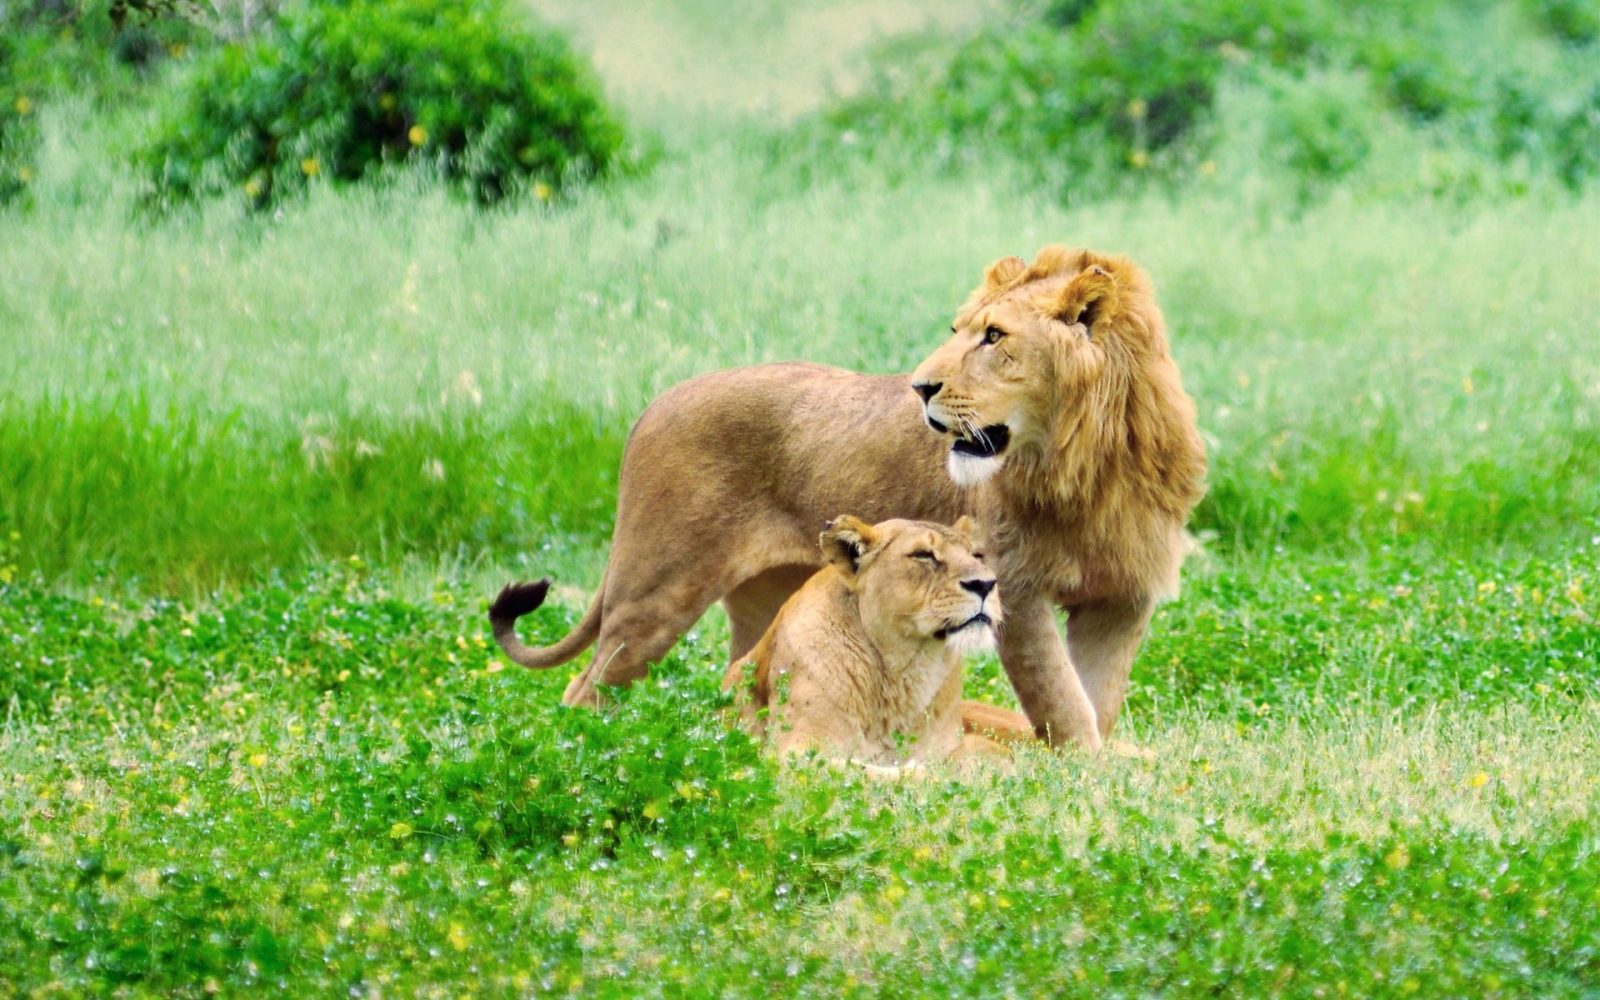 vida silvestre fondos de pantalla hd,fauna silvestre,león,felidae,animal terrestre,masai lion